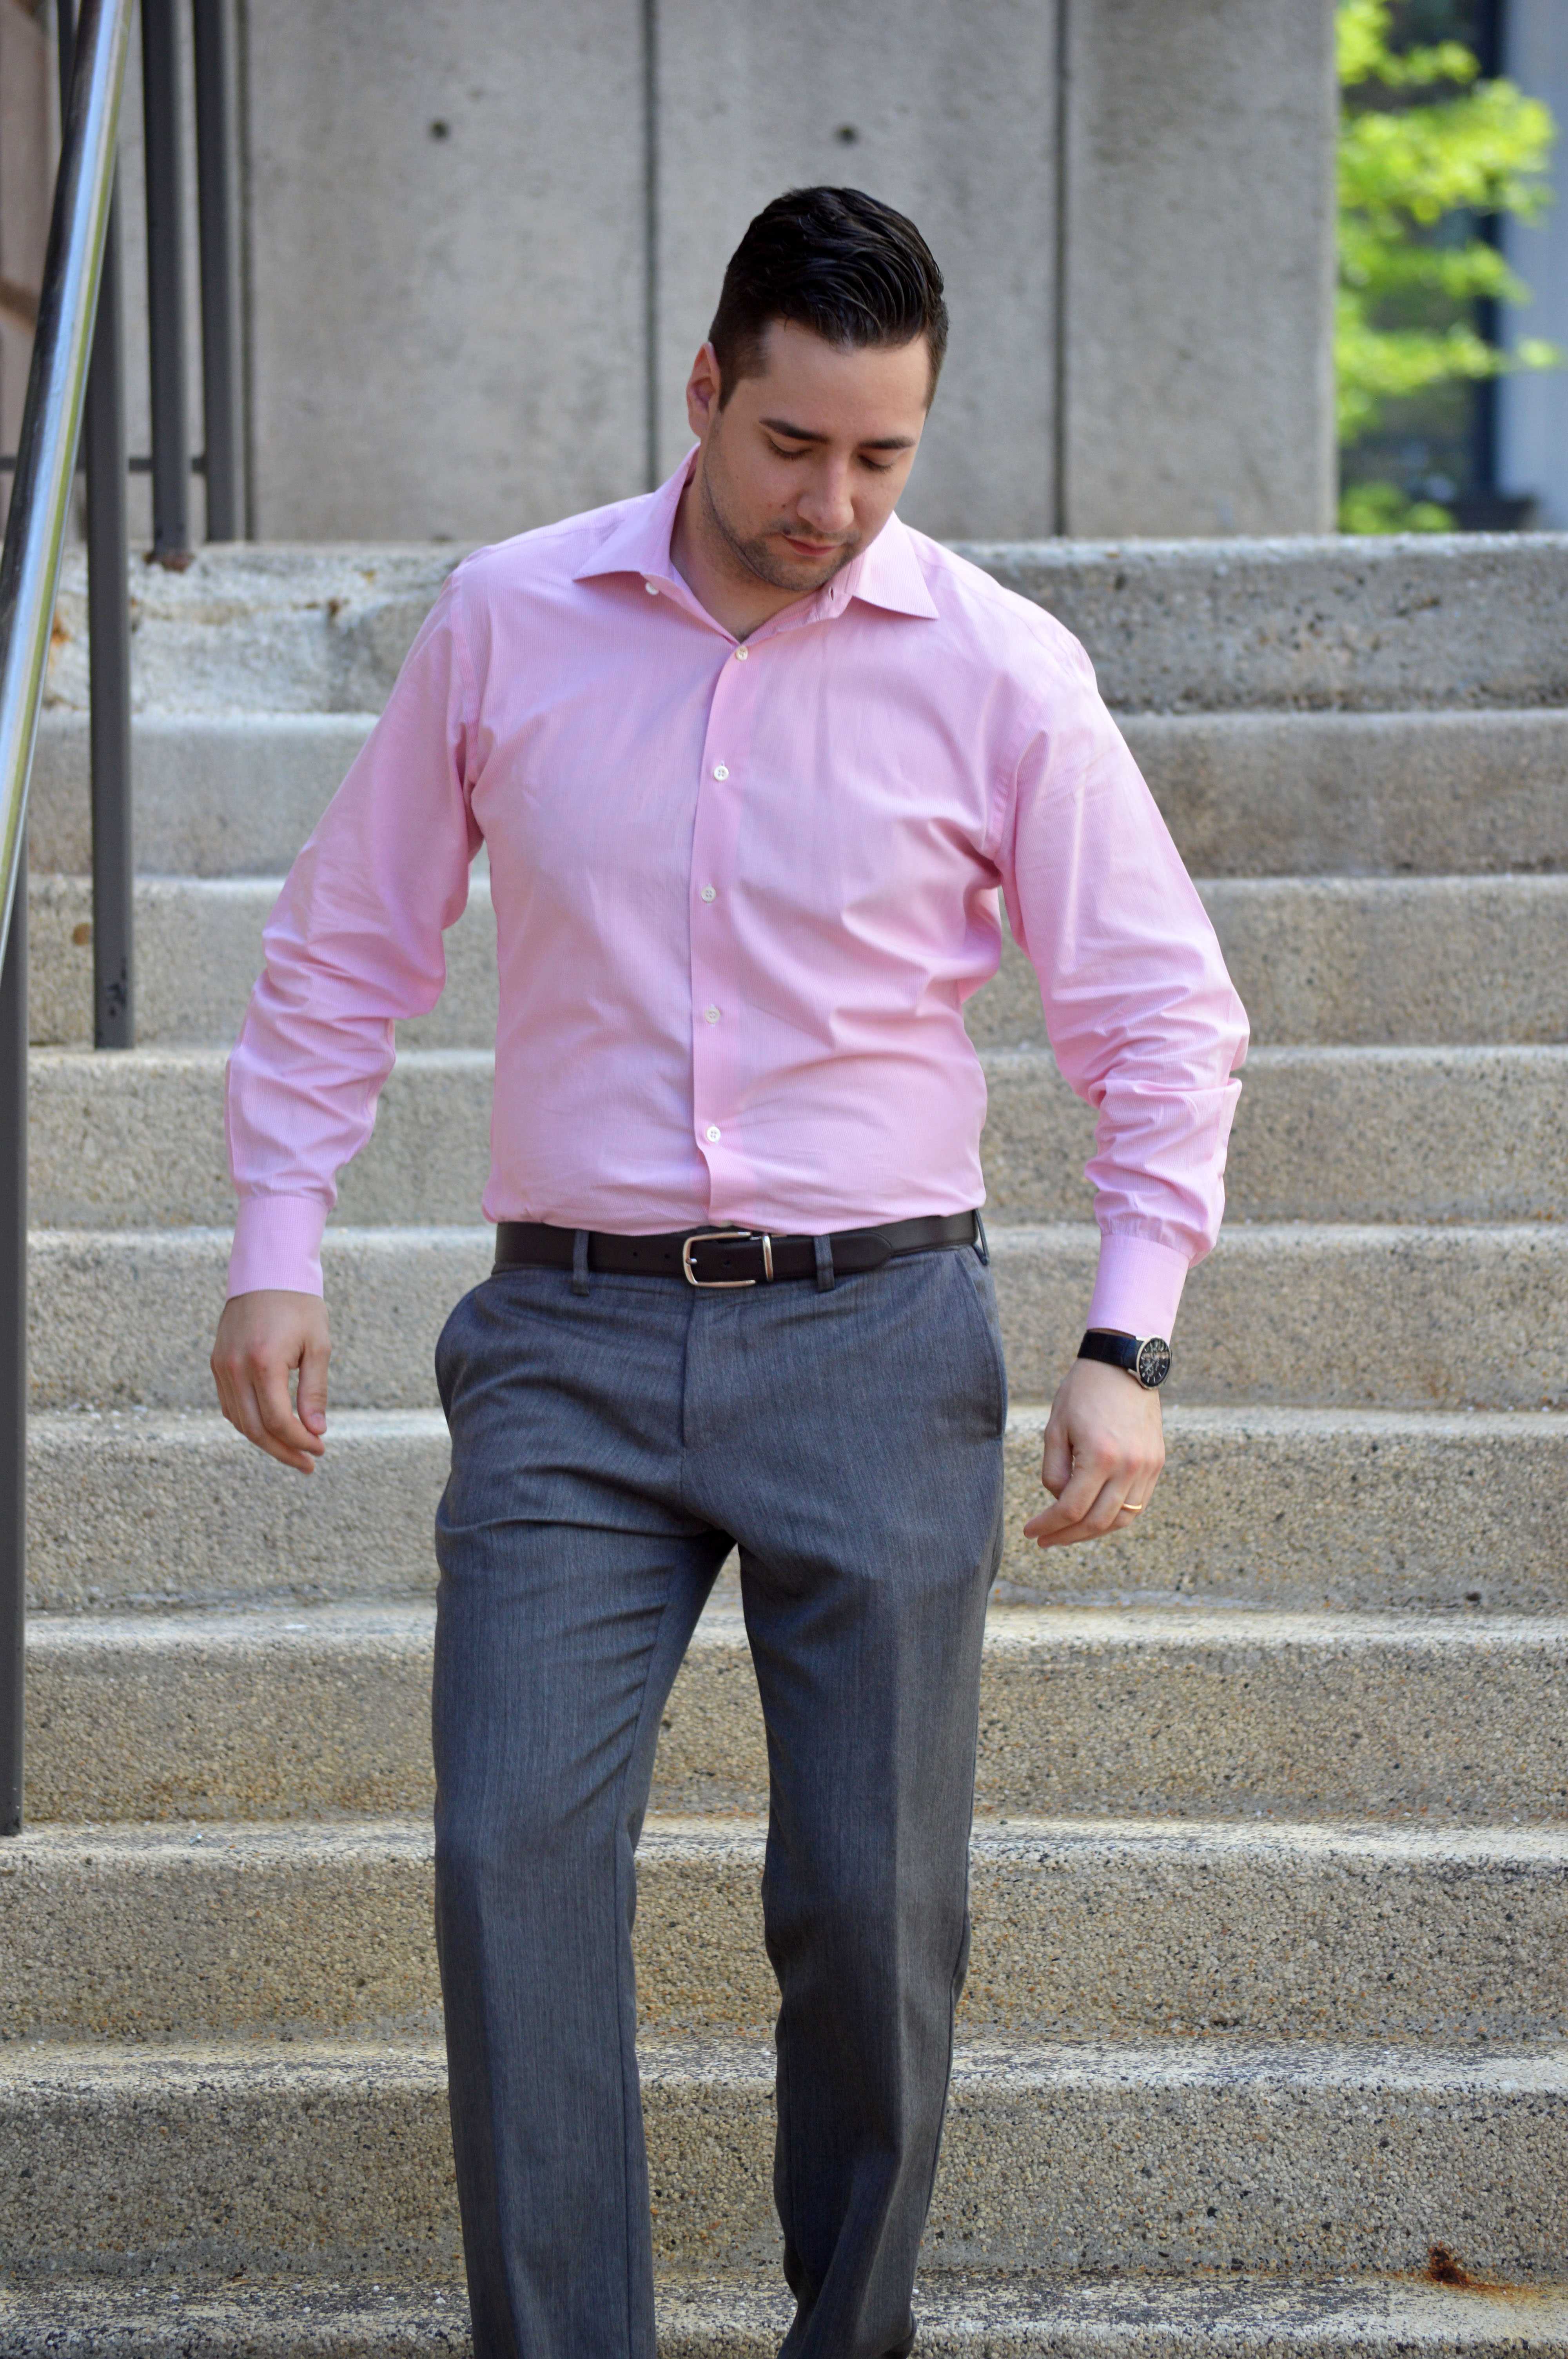 Розовая рубашка - с чем и как её носить мужчинам